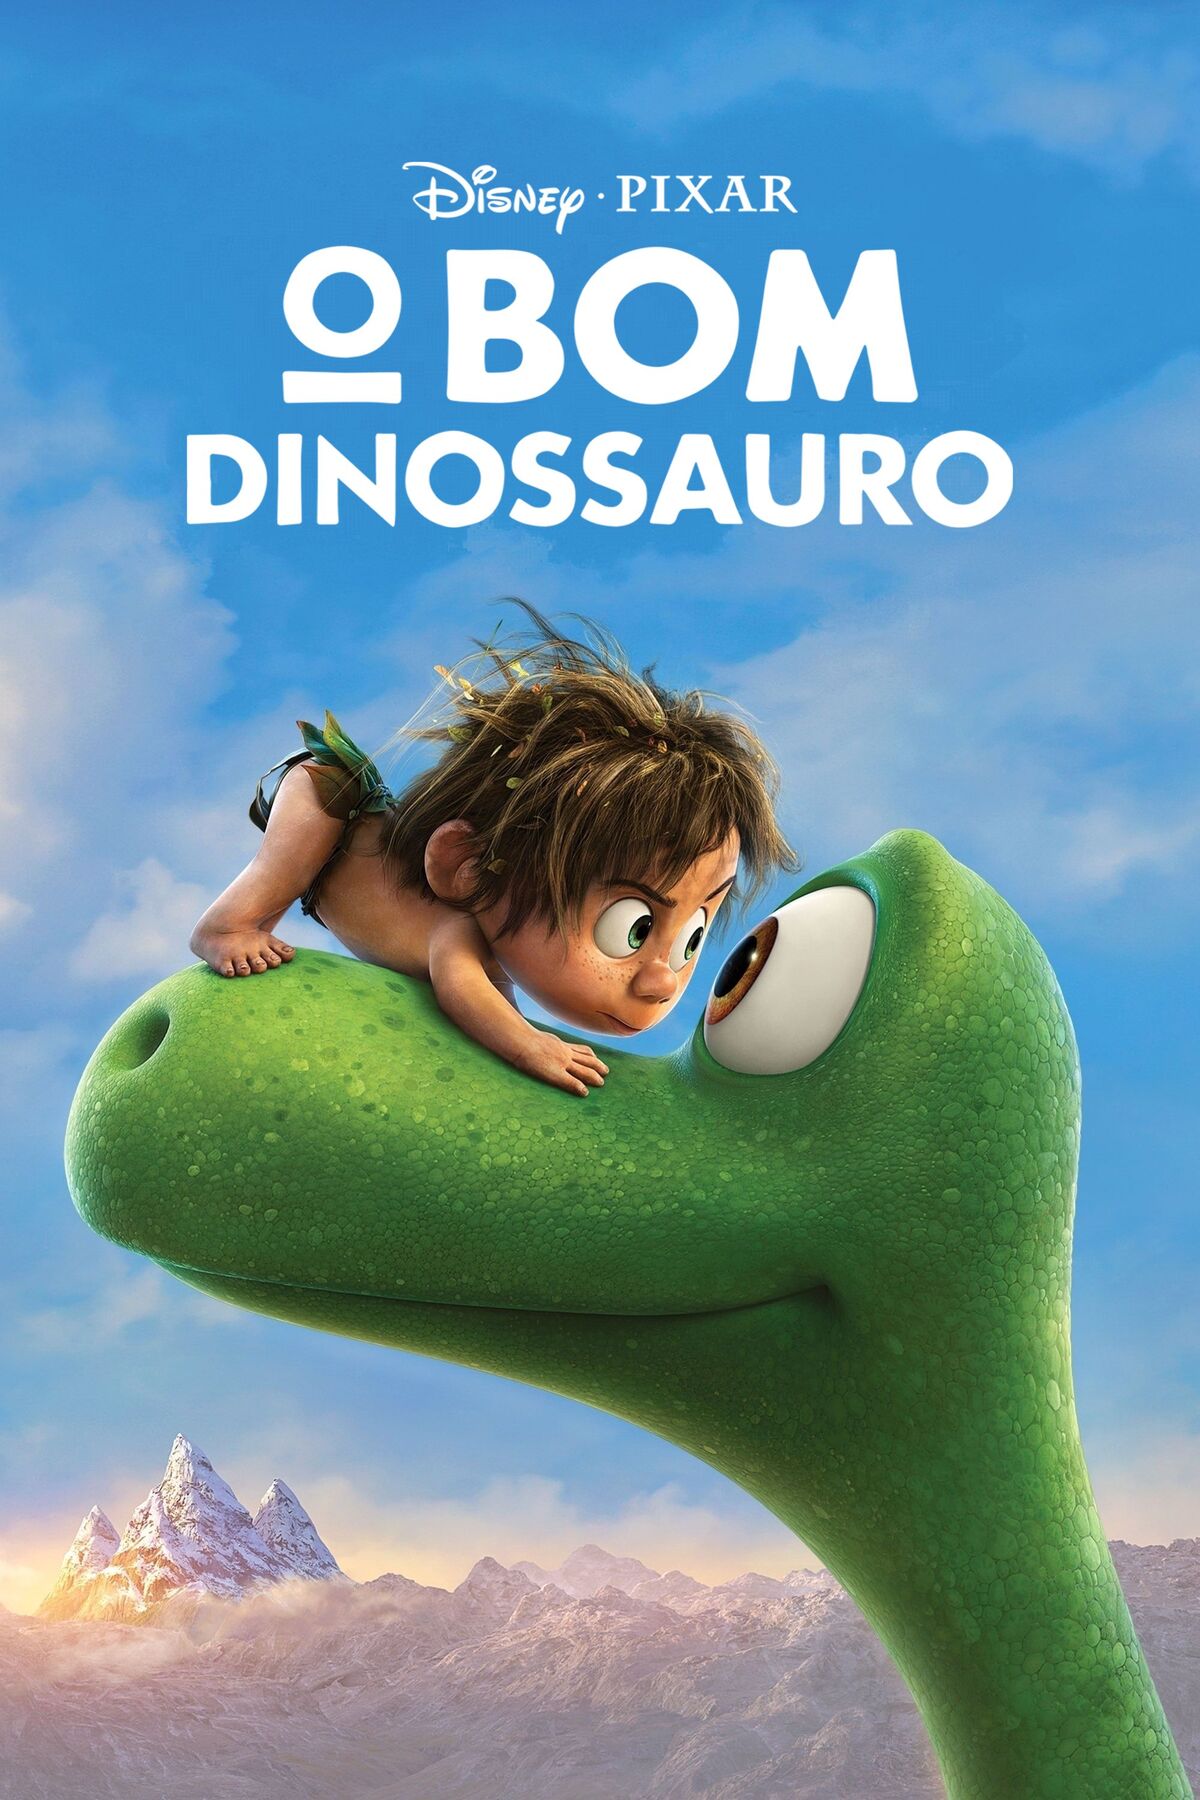 O dinossauro da Pixar e a Grace de Mônaco - Diário do Vale